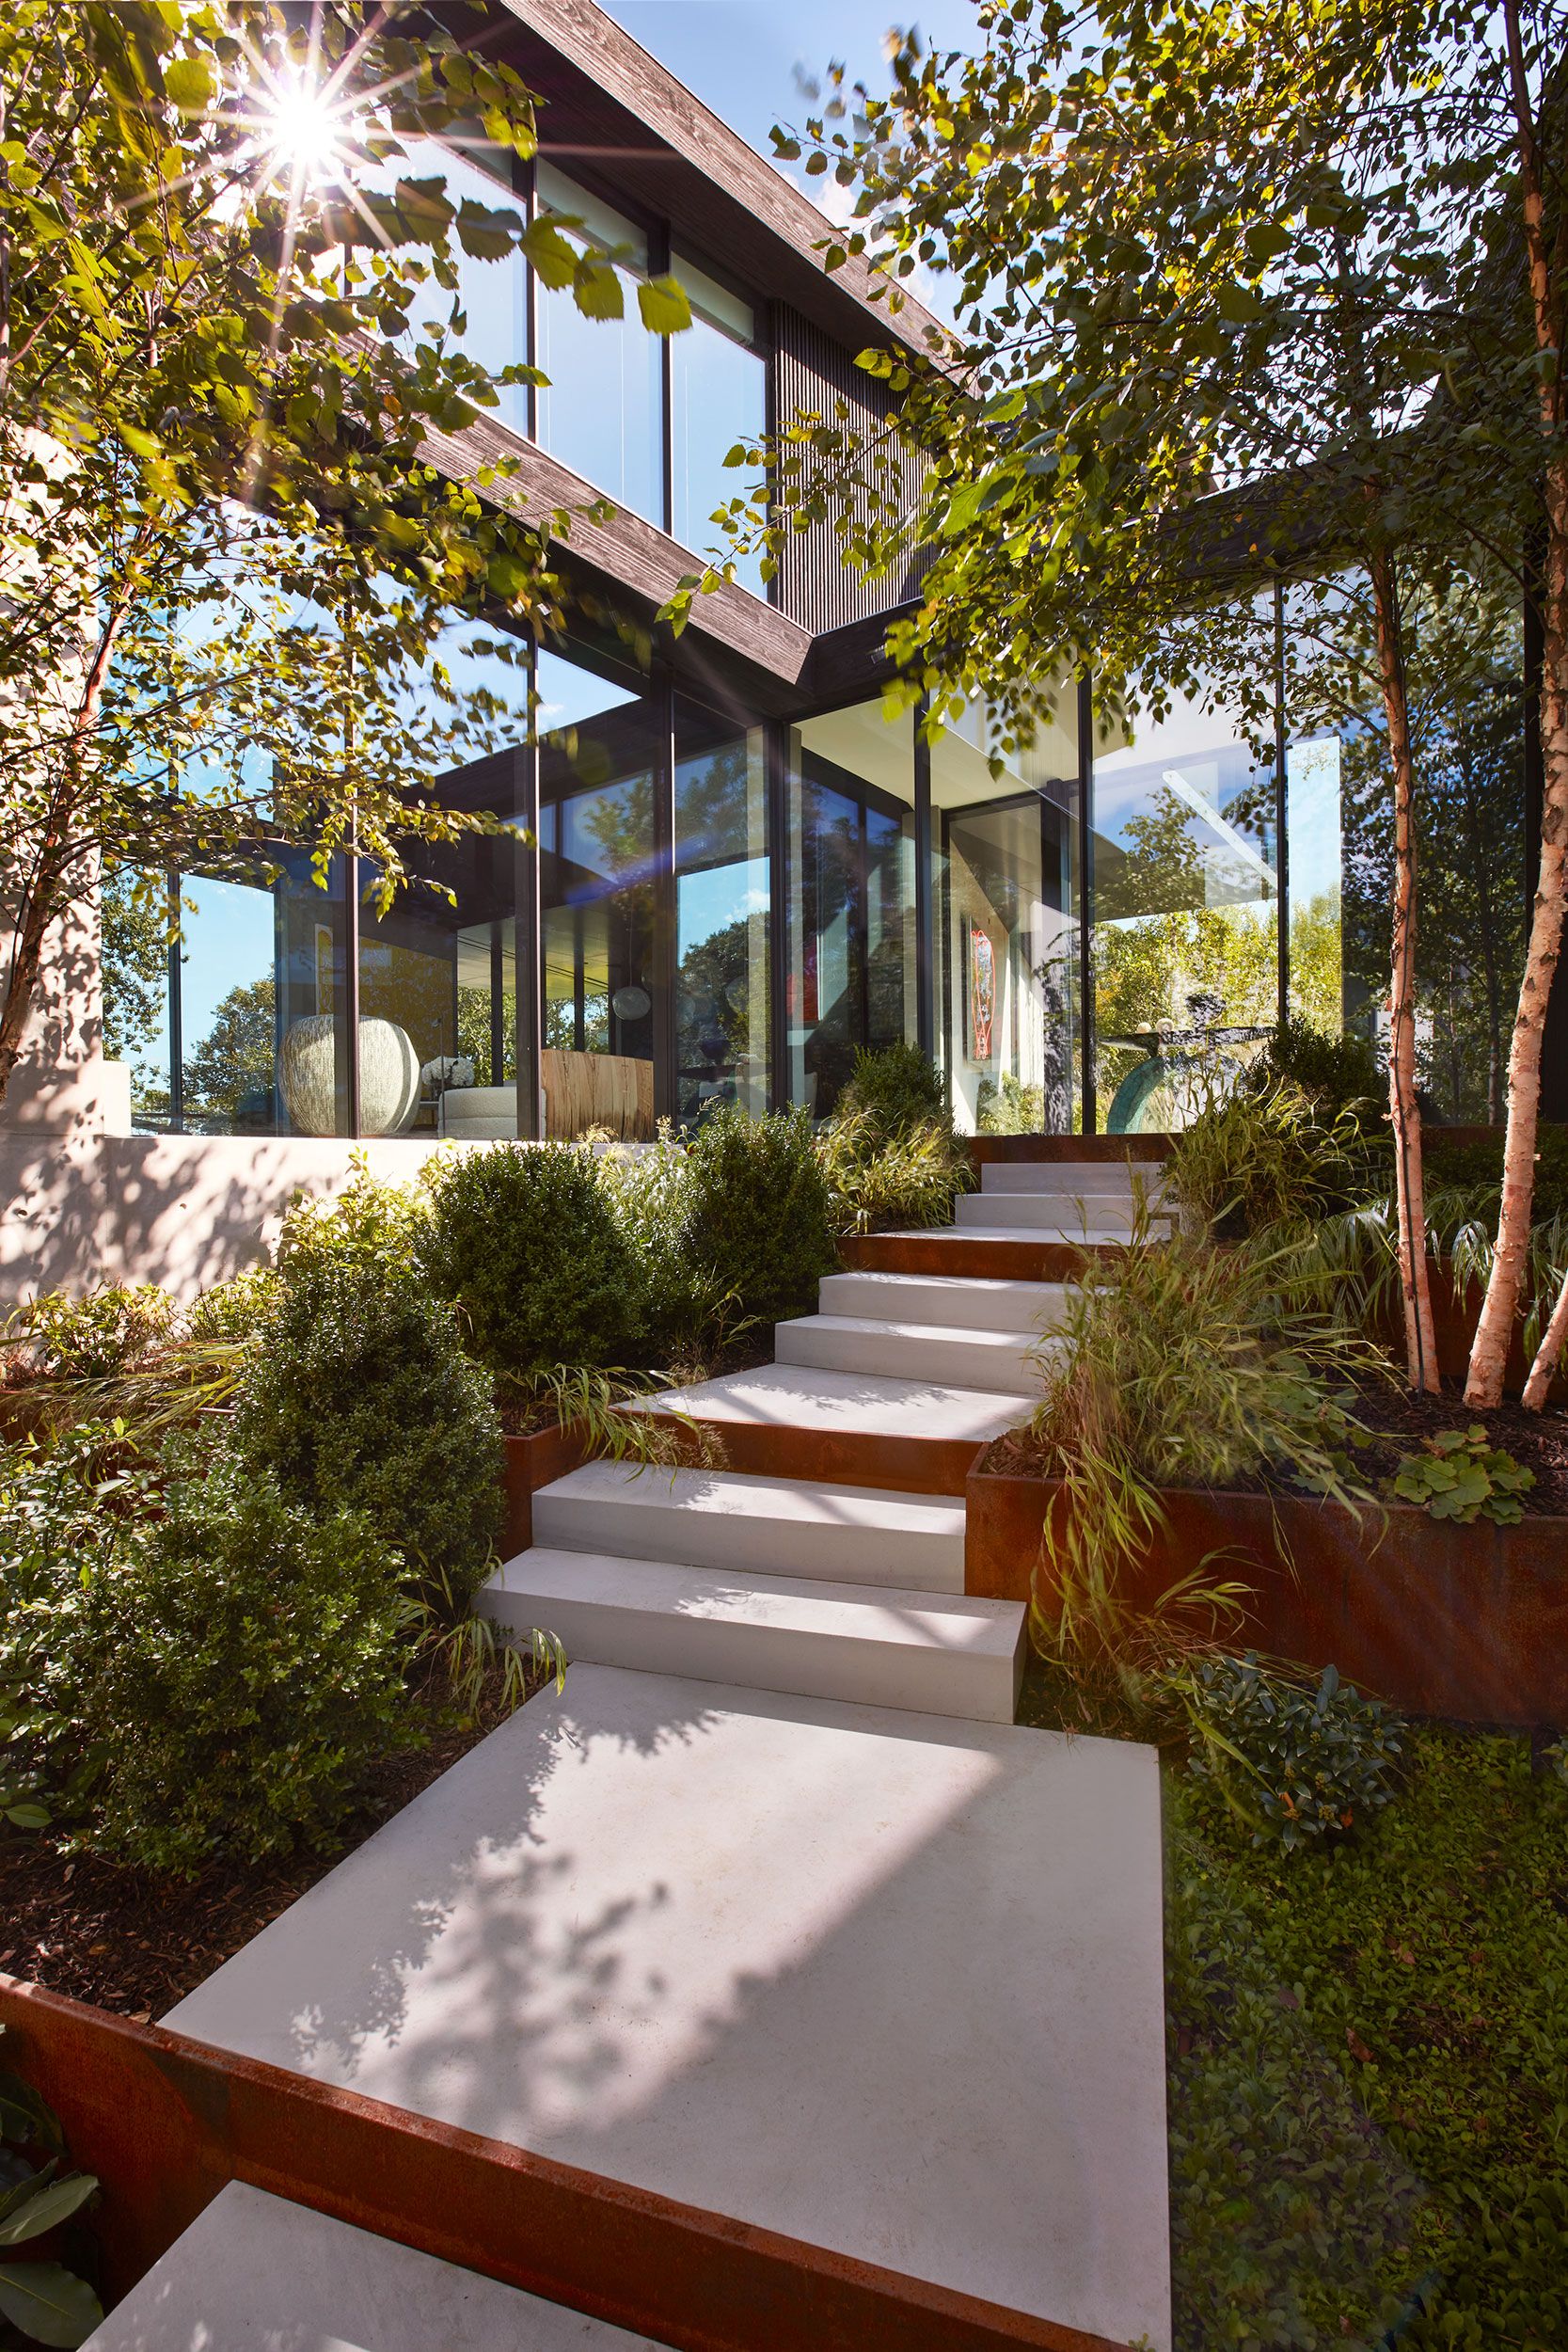 Arte, diseño y paisajismo en una casa de arquitectura minimalista